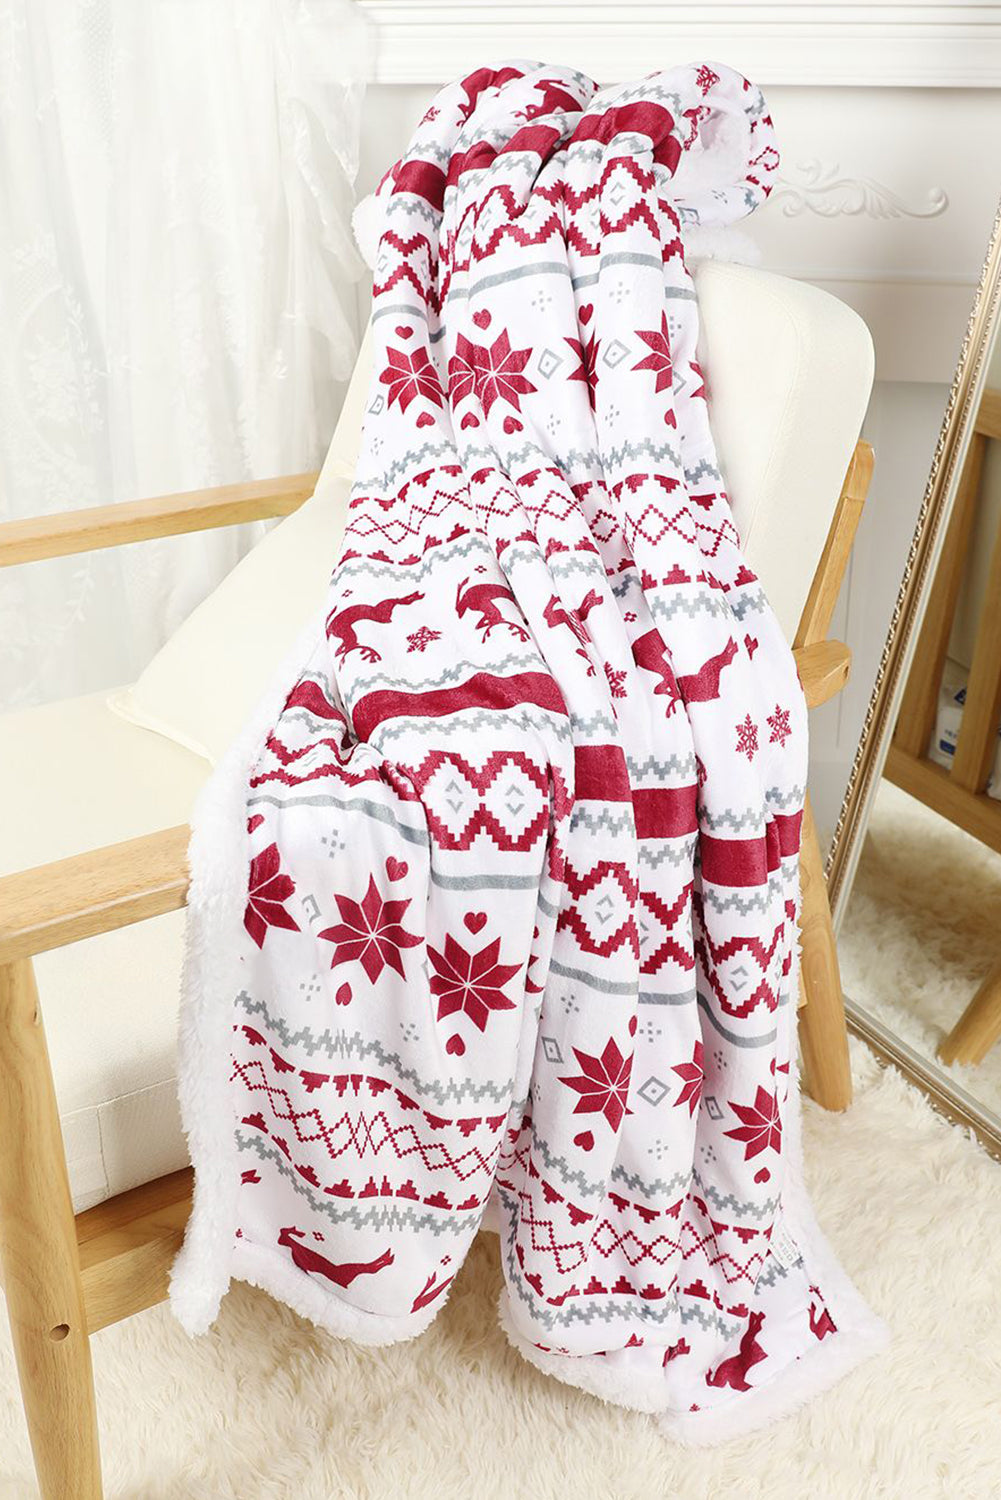 Snow White Christmas Reindeer Snowflake Printed Sherpa Blanket